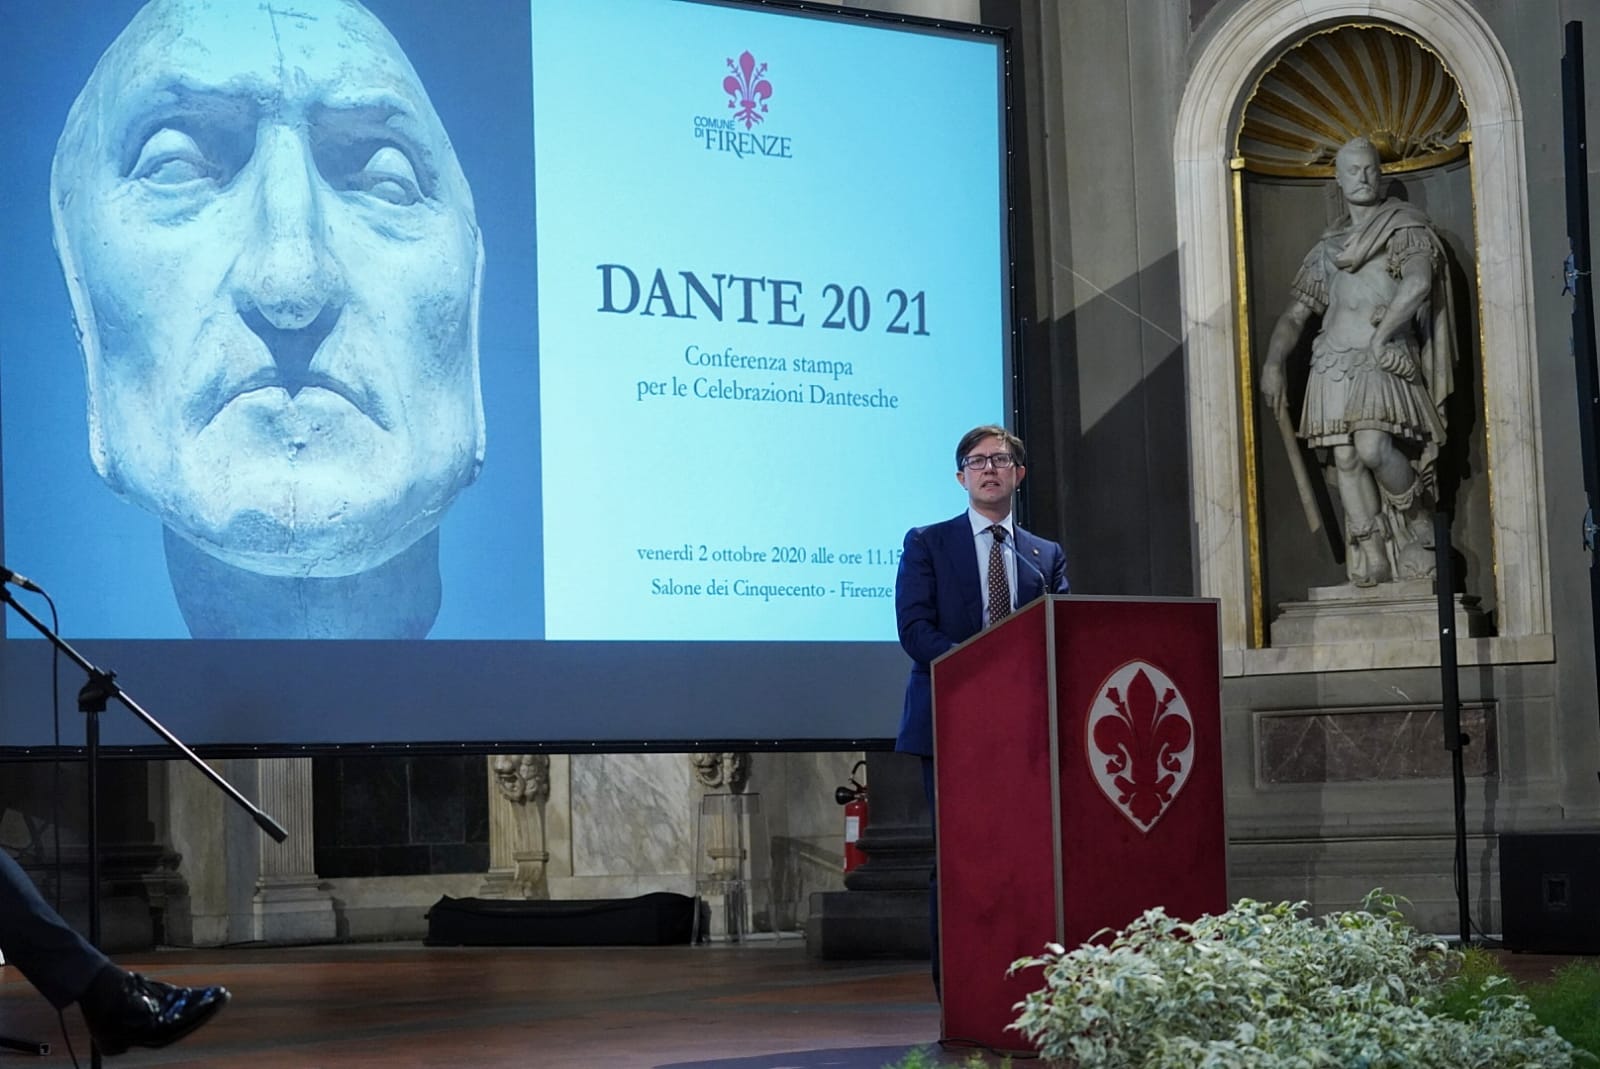 Dante 2021 -Courtesy Comune di Firenze